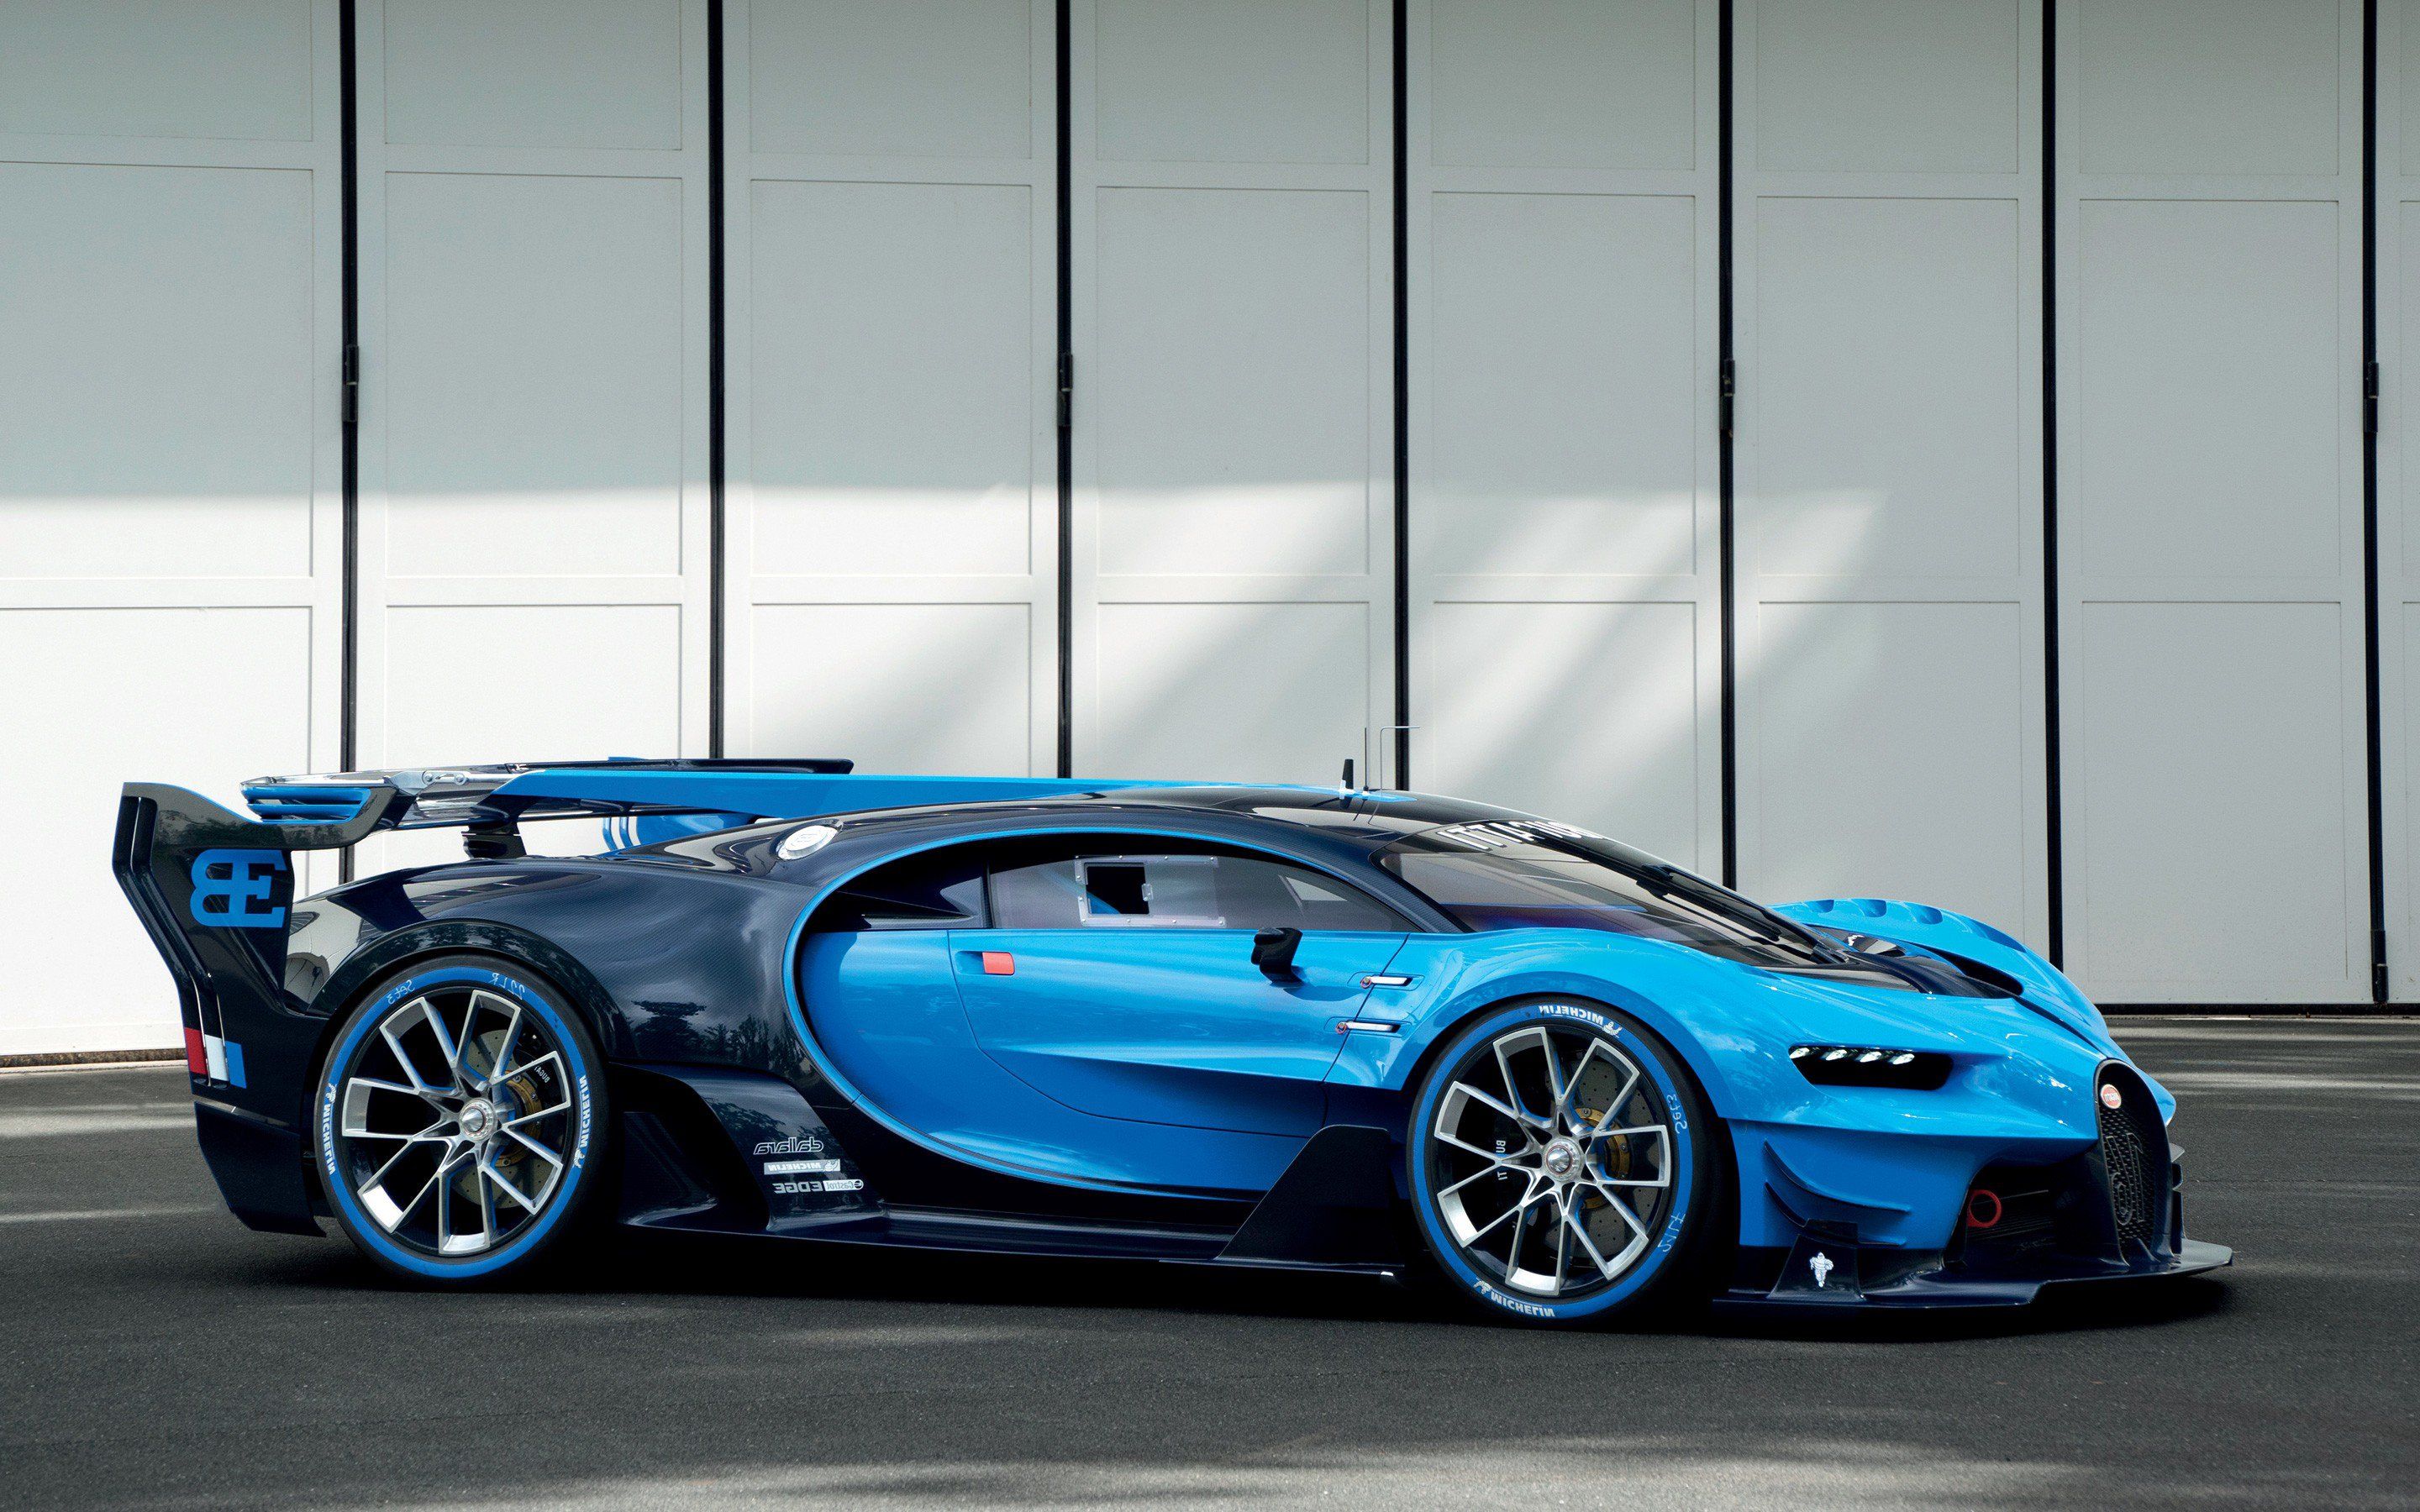 Bugatti Vision Gran Turismo PC, HD Cars, 4k Wallpaper, Image, Background, Photo and Picture